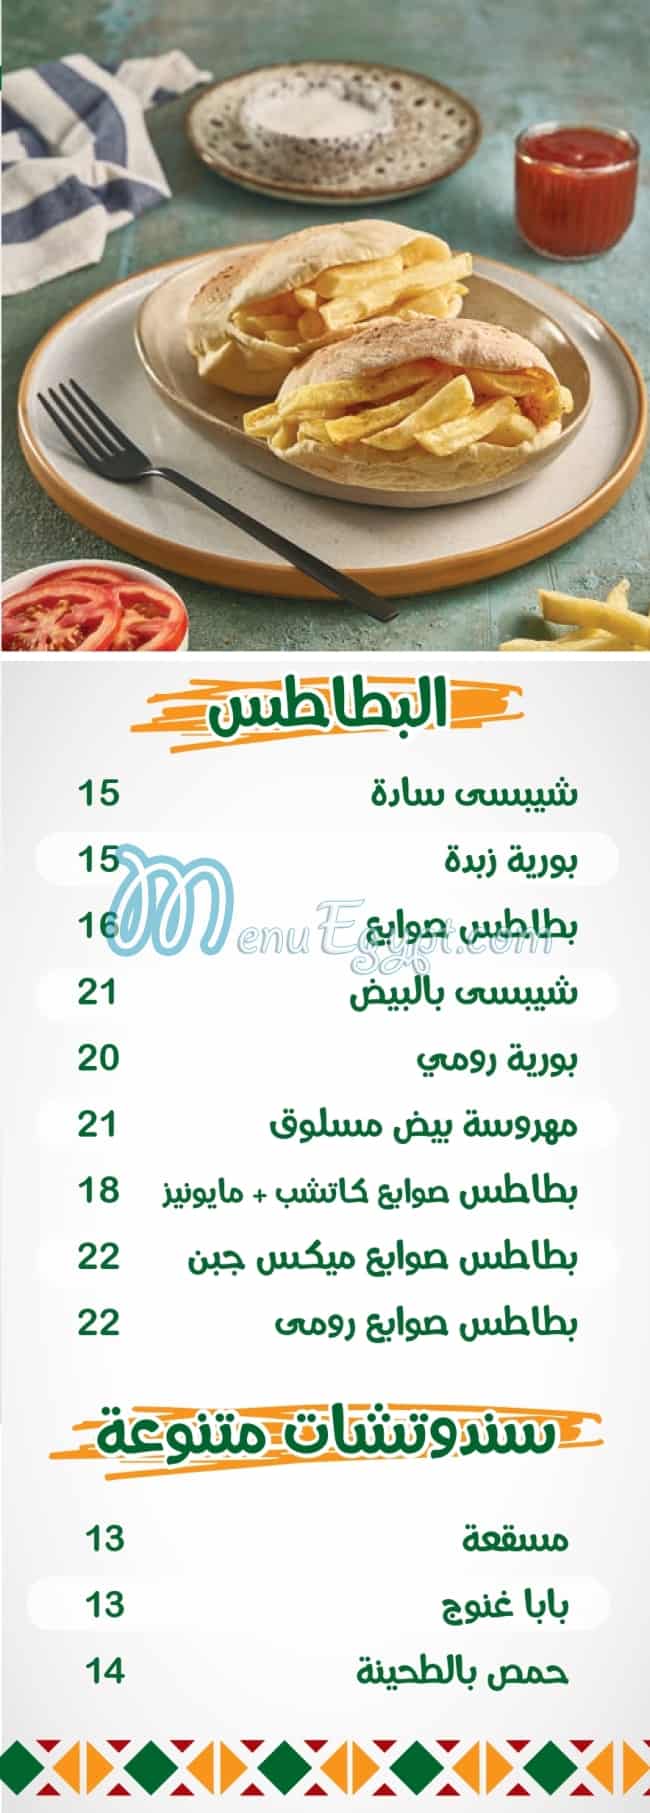 El Ga3an menu prices